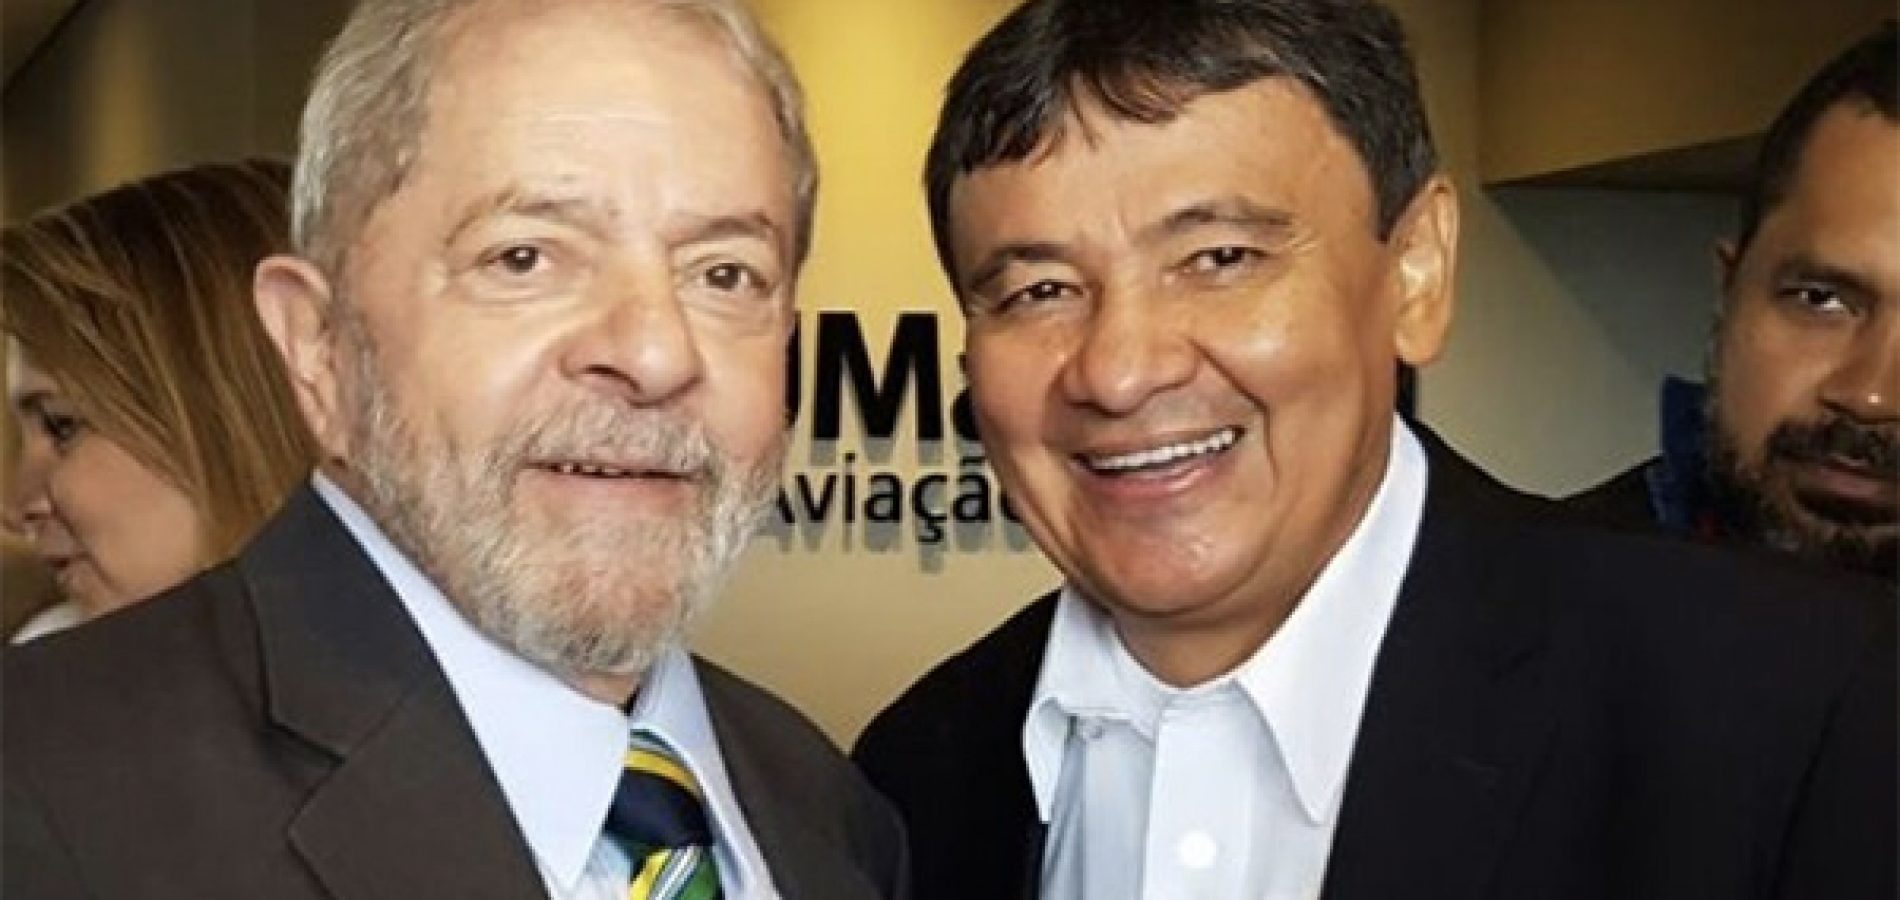 Wellington Dias é visto como ‘substituto’ de Lula como candidato a presidente da República